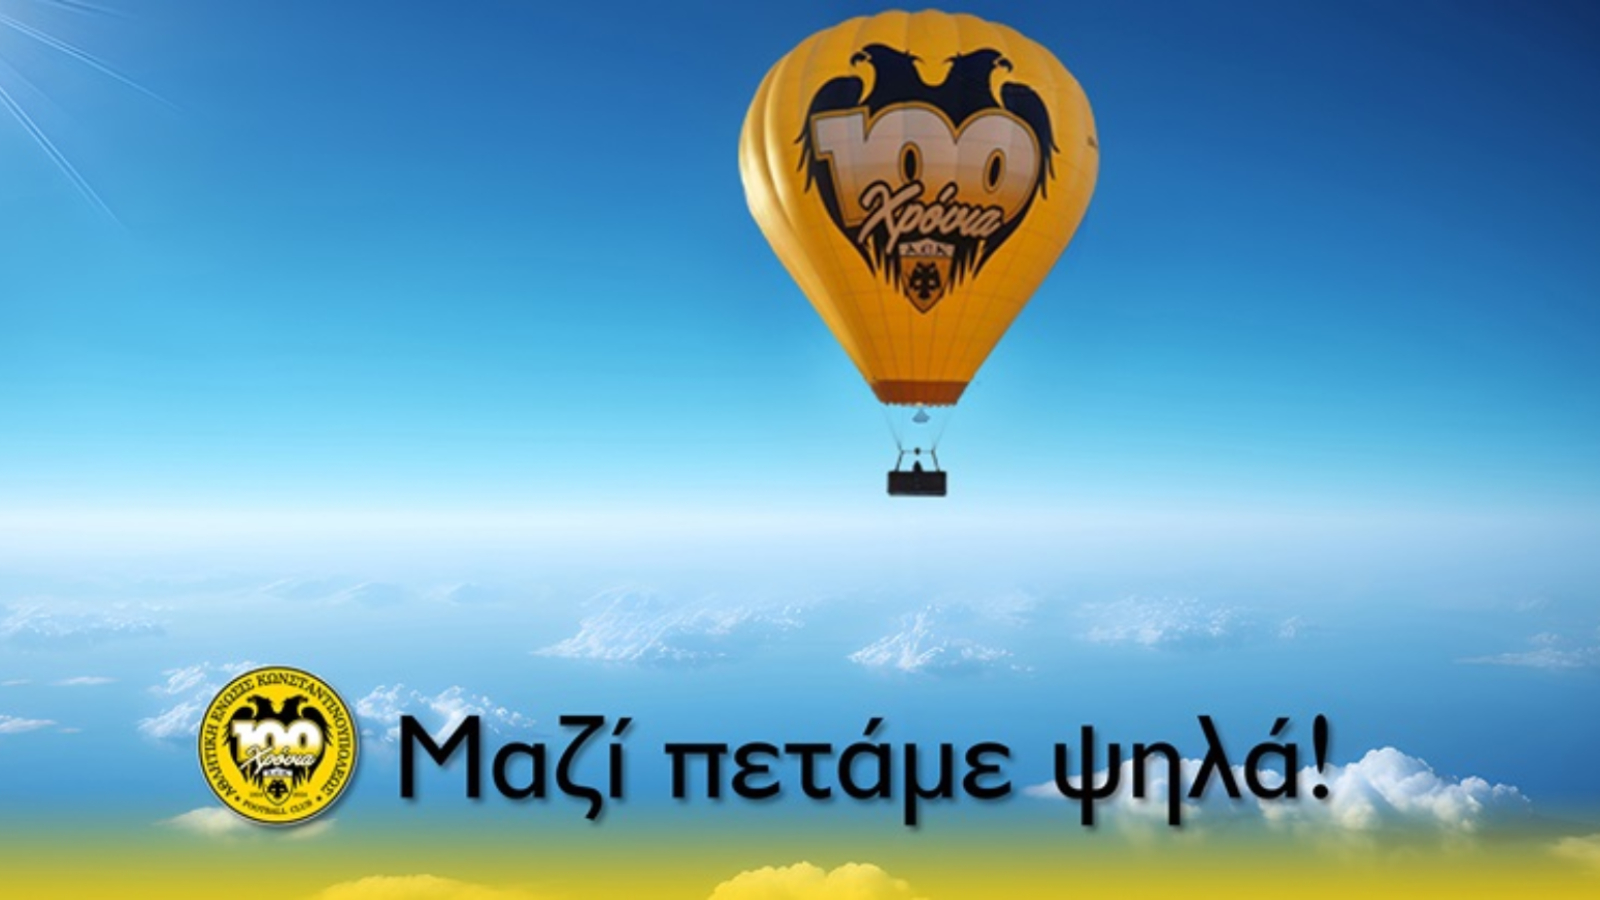 Η ΑΕΚ ανακοίνωσε ιδιωτικές πτήσεις με το αερόστατο των 100 χρόνων